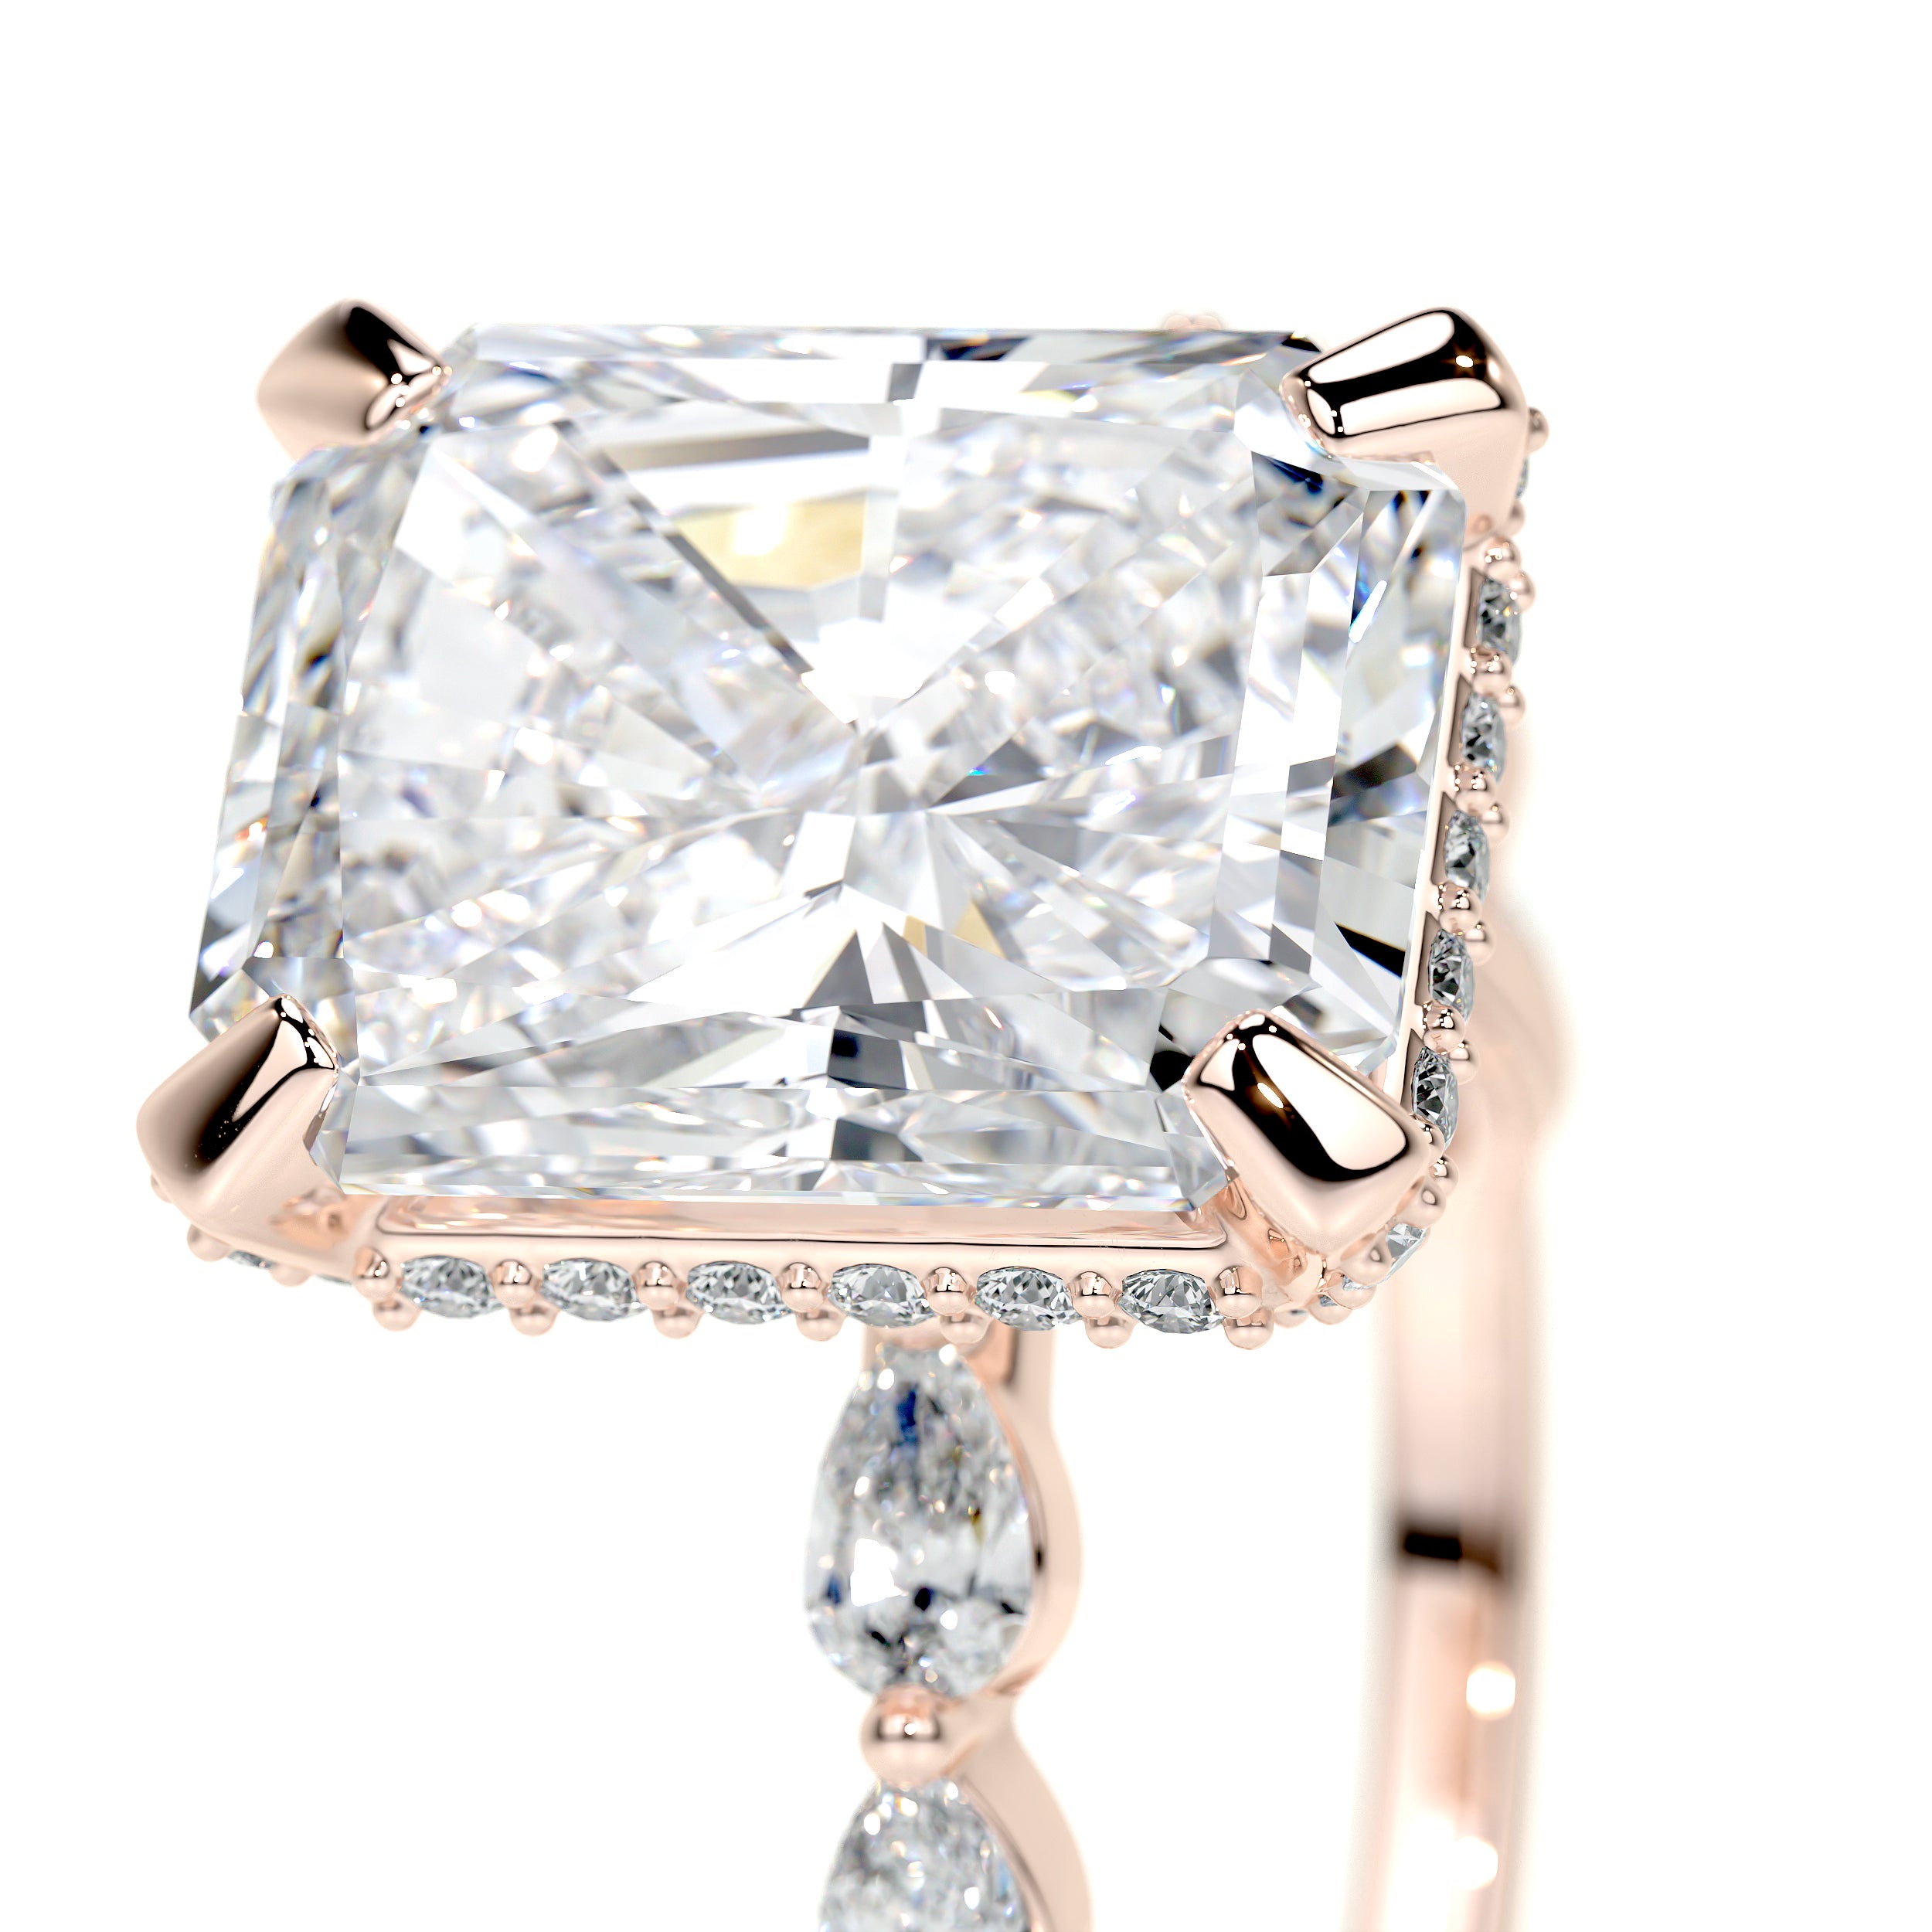 Robin Lab Grown Diamond Ring -14K Rose Gold